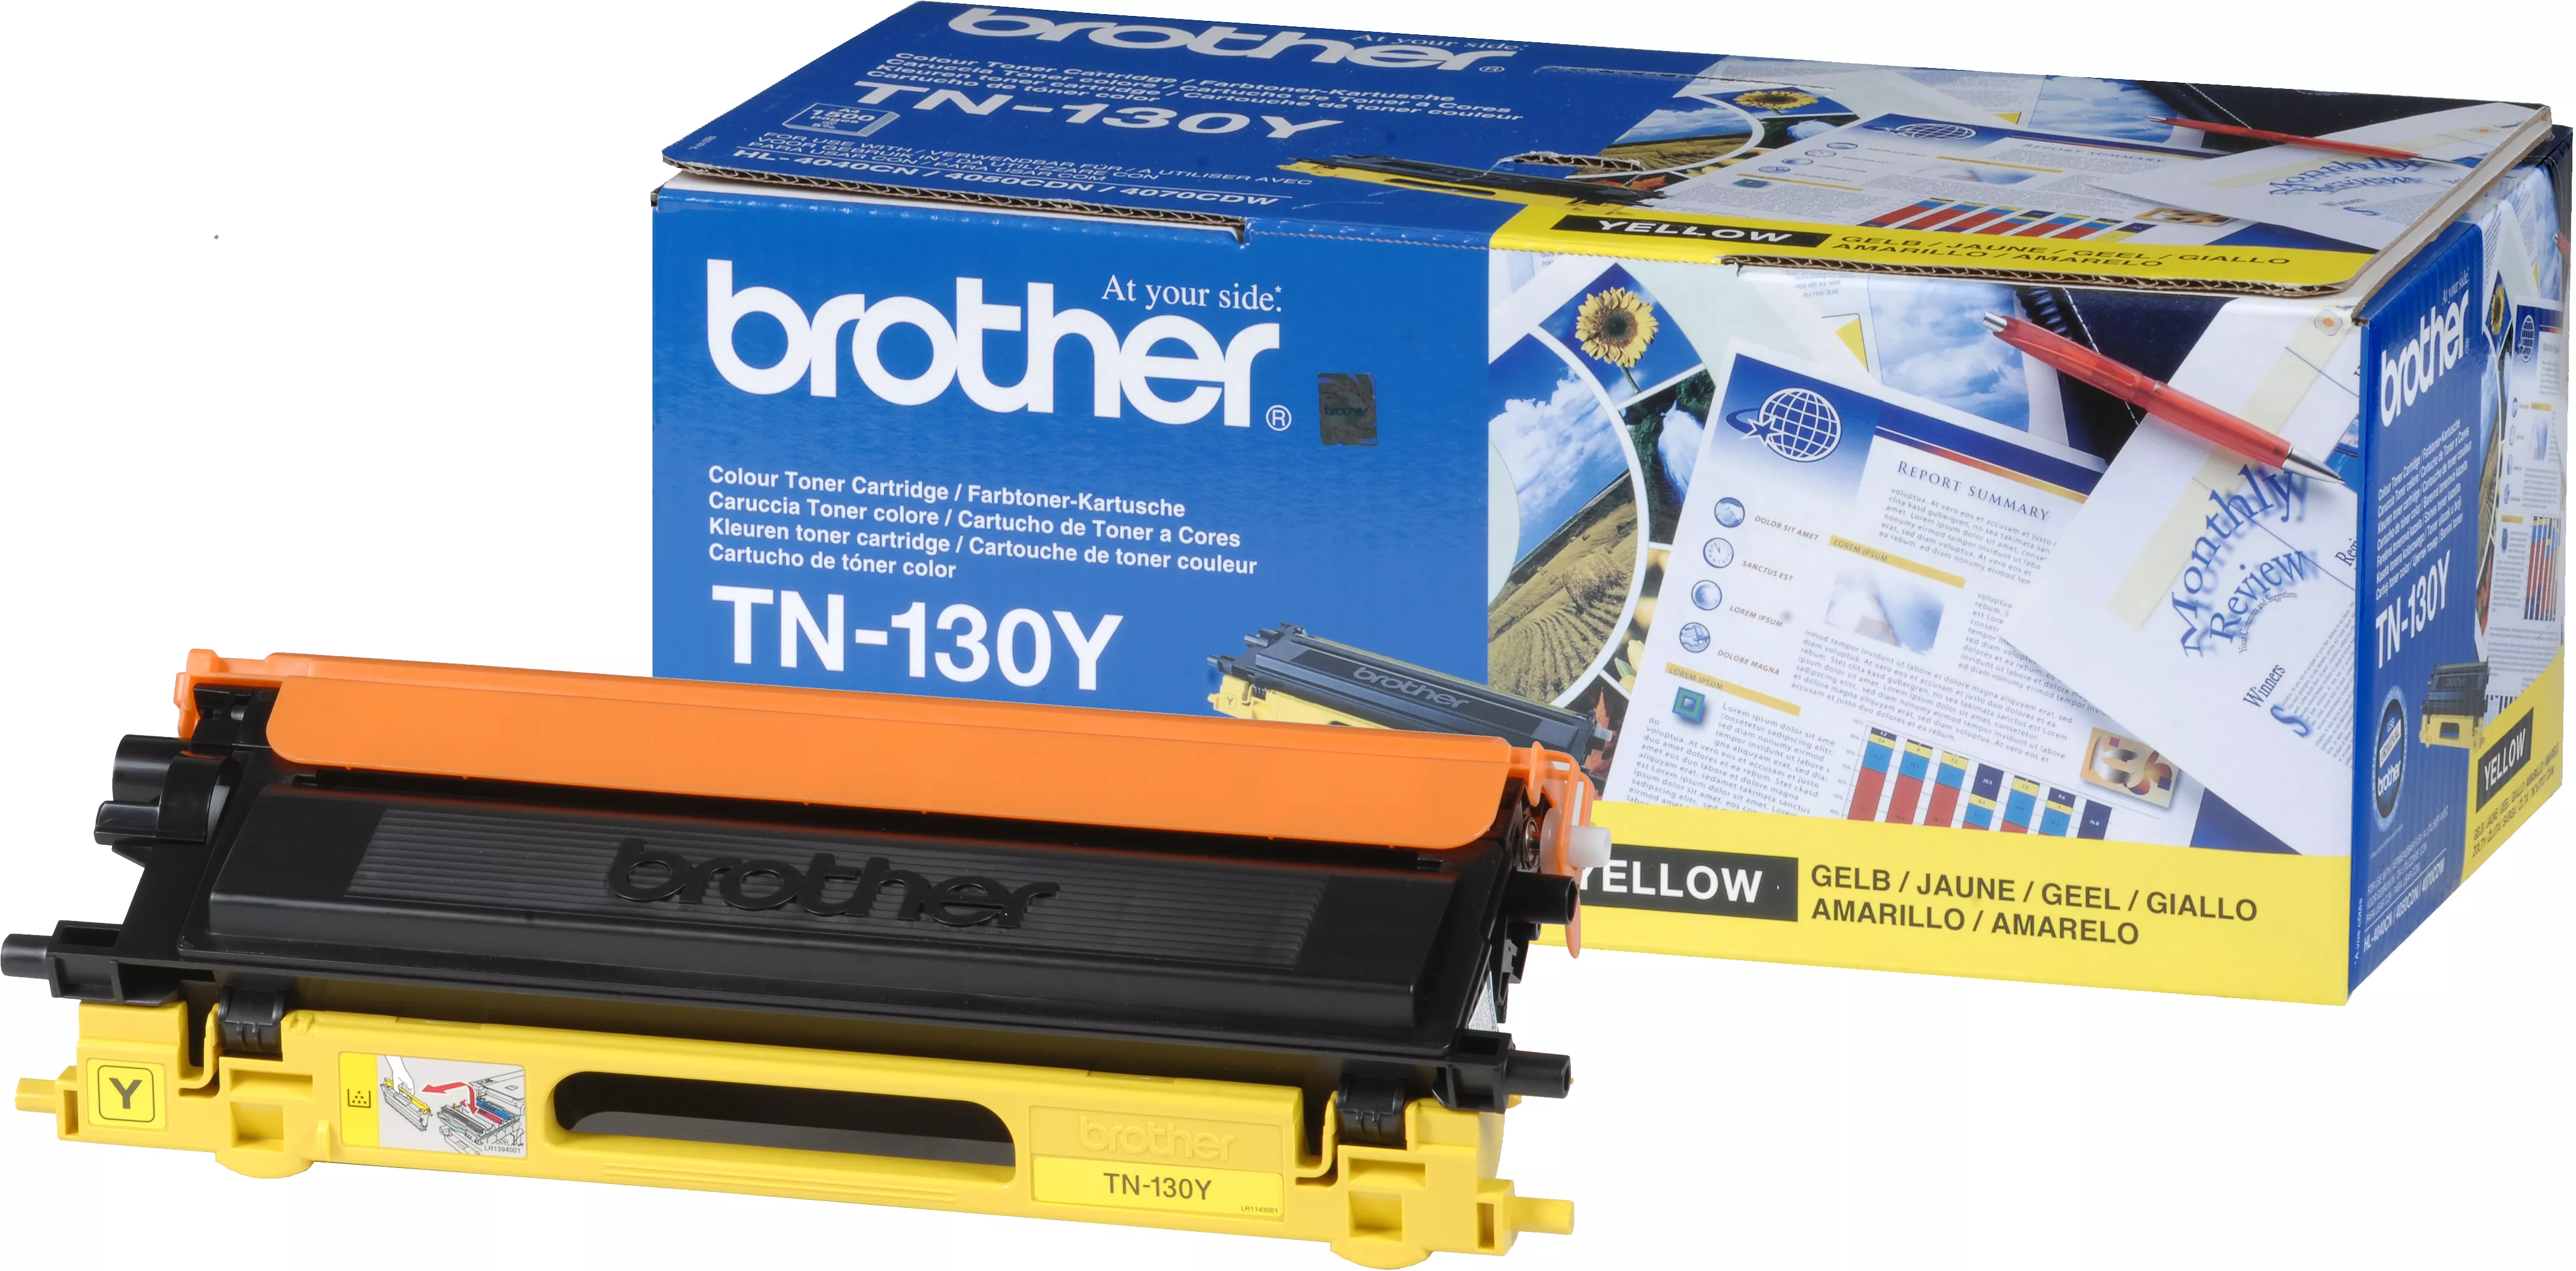 Vente BROTHER TN-130 cartouche de toner jaune faible capacité Brother au meilleur prix - visuel 2